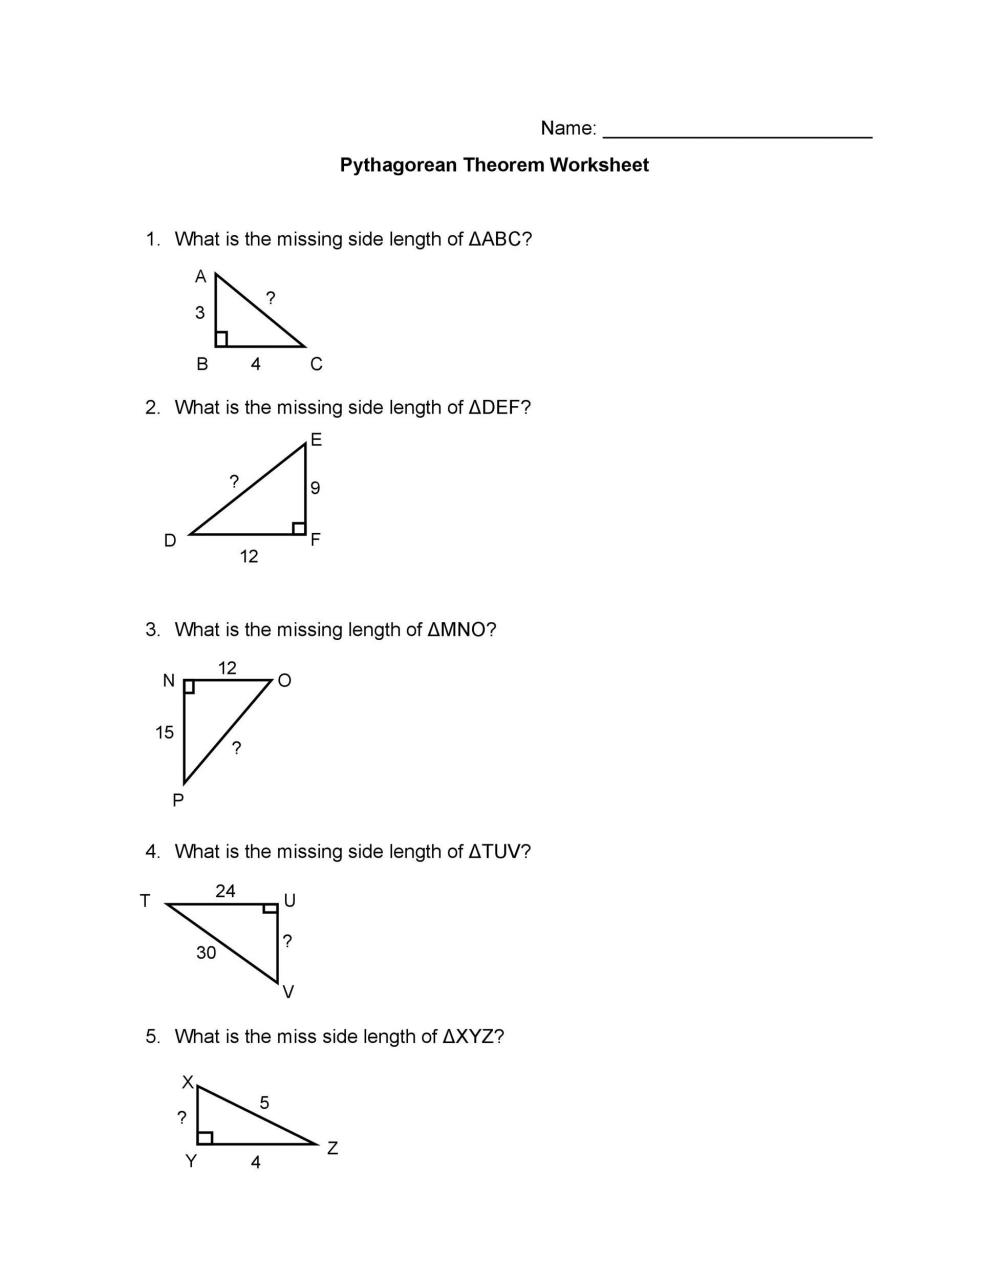 Libre teorema de Pitágoras 25